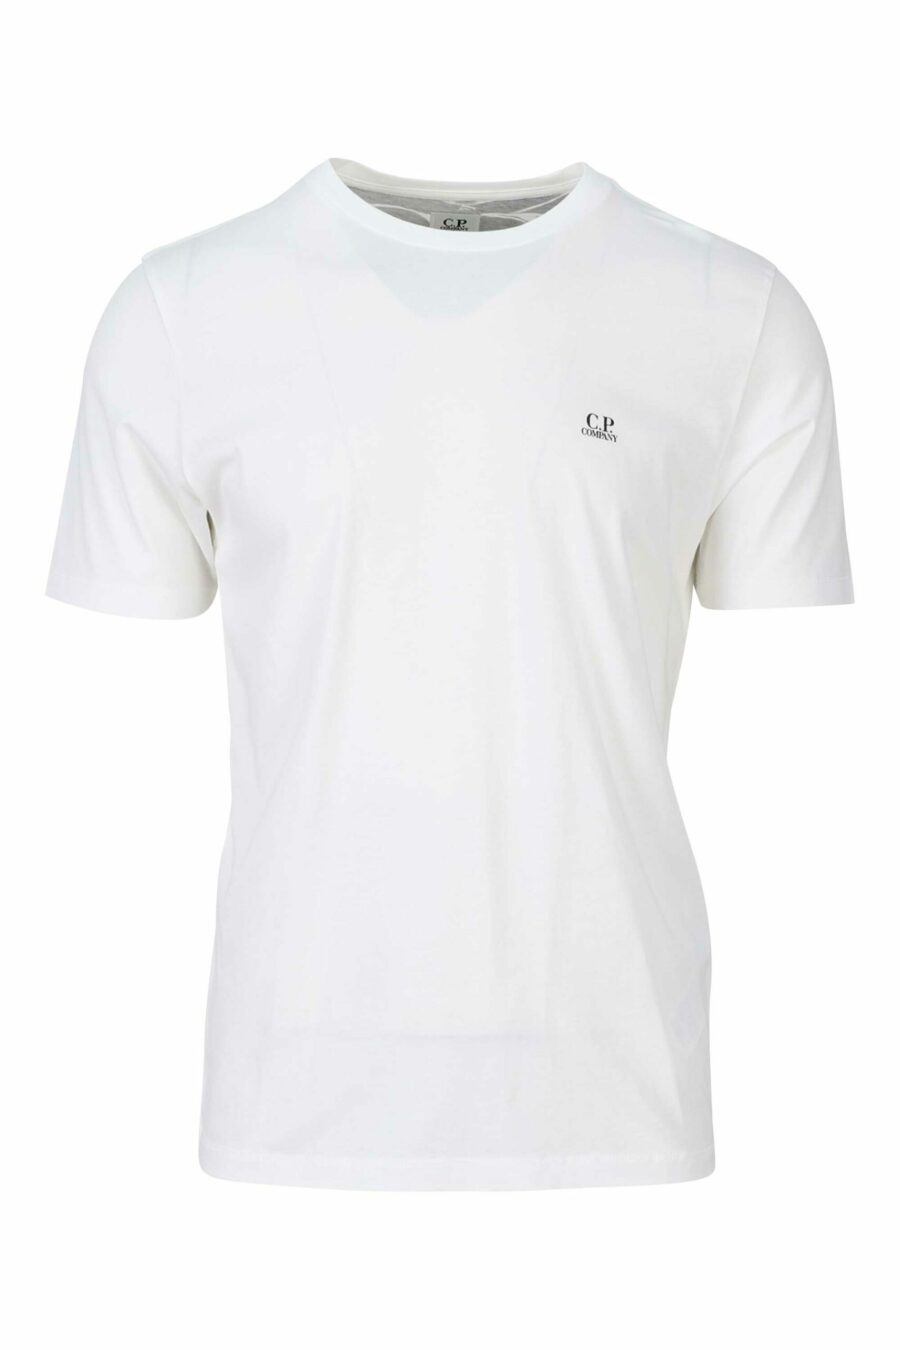 T-shirt blanc avec capuche et patch logo - 7620943570397 1 scaled